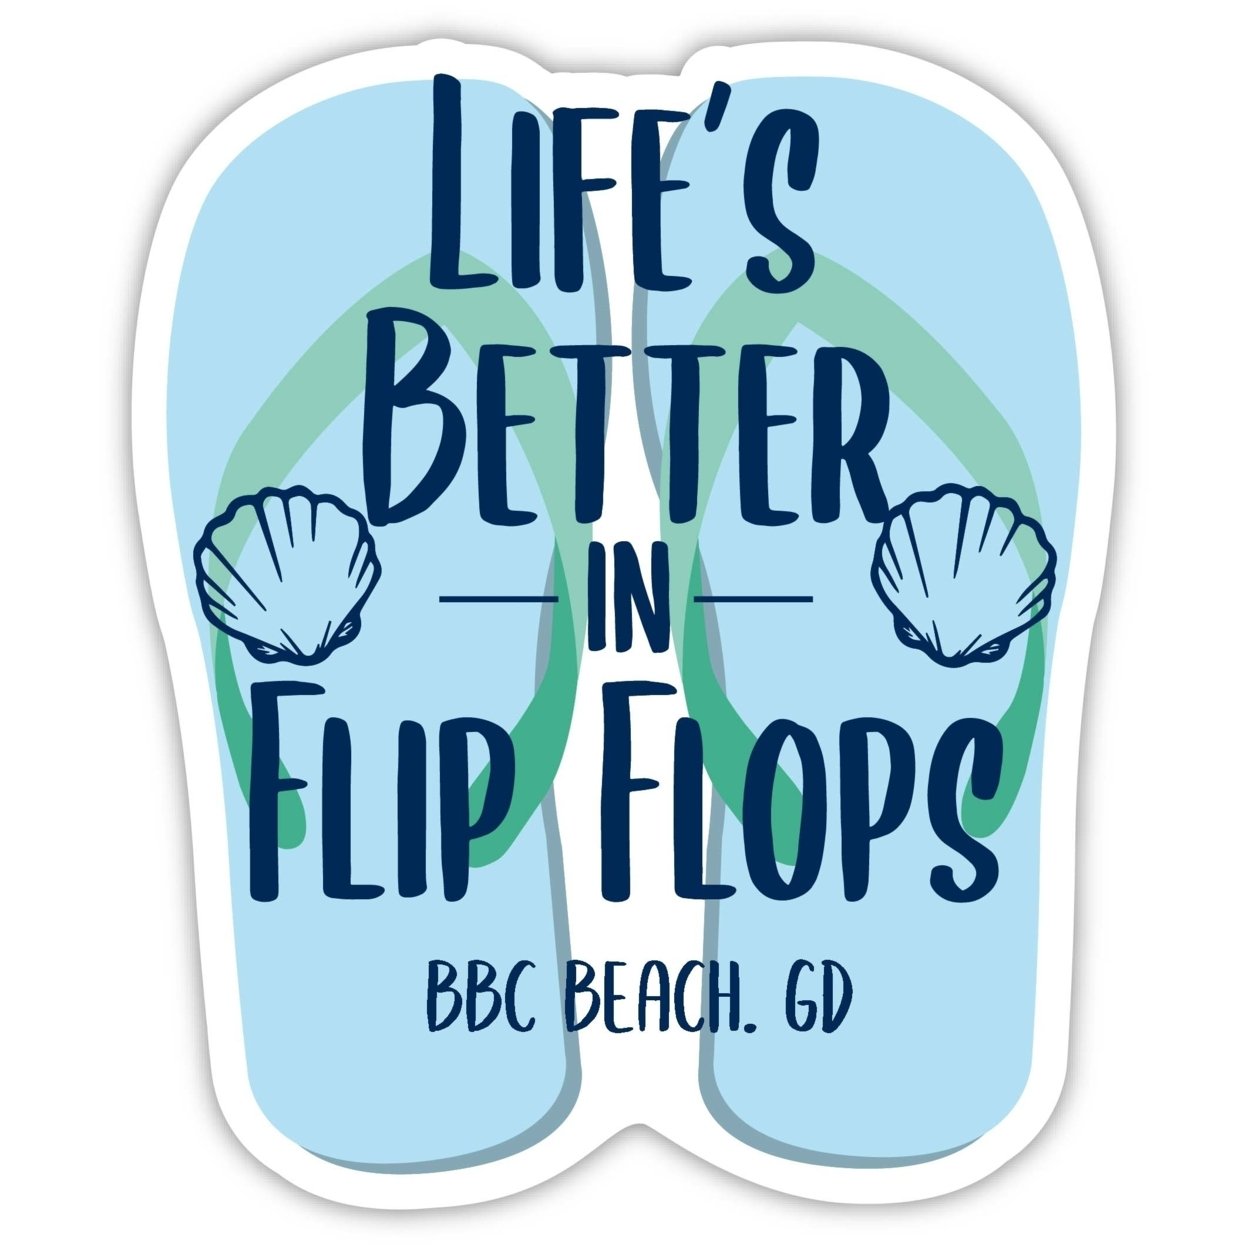 Bbc Beach Grenada Souvenir 4 Inch Vinyl Decal Sticker Flip Flop Design